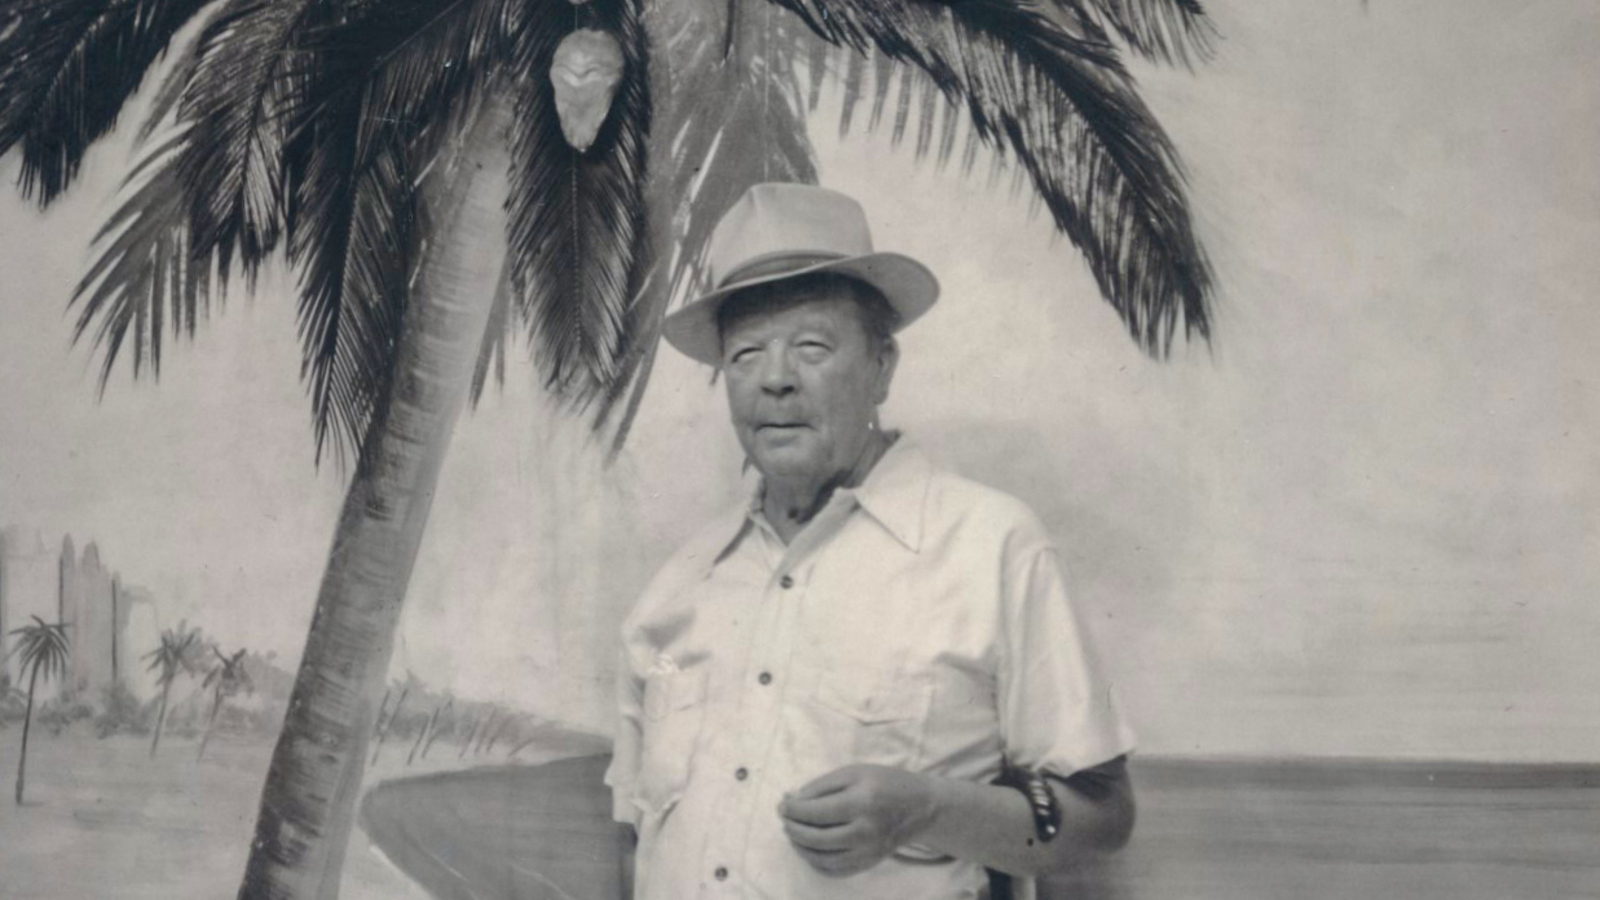 Kuvassa on Juho Rissanen seisomassa palmun luona. Kuvan sävy on harmahtava.